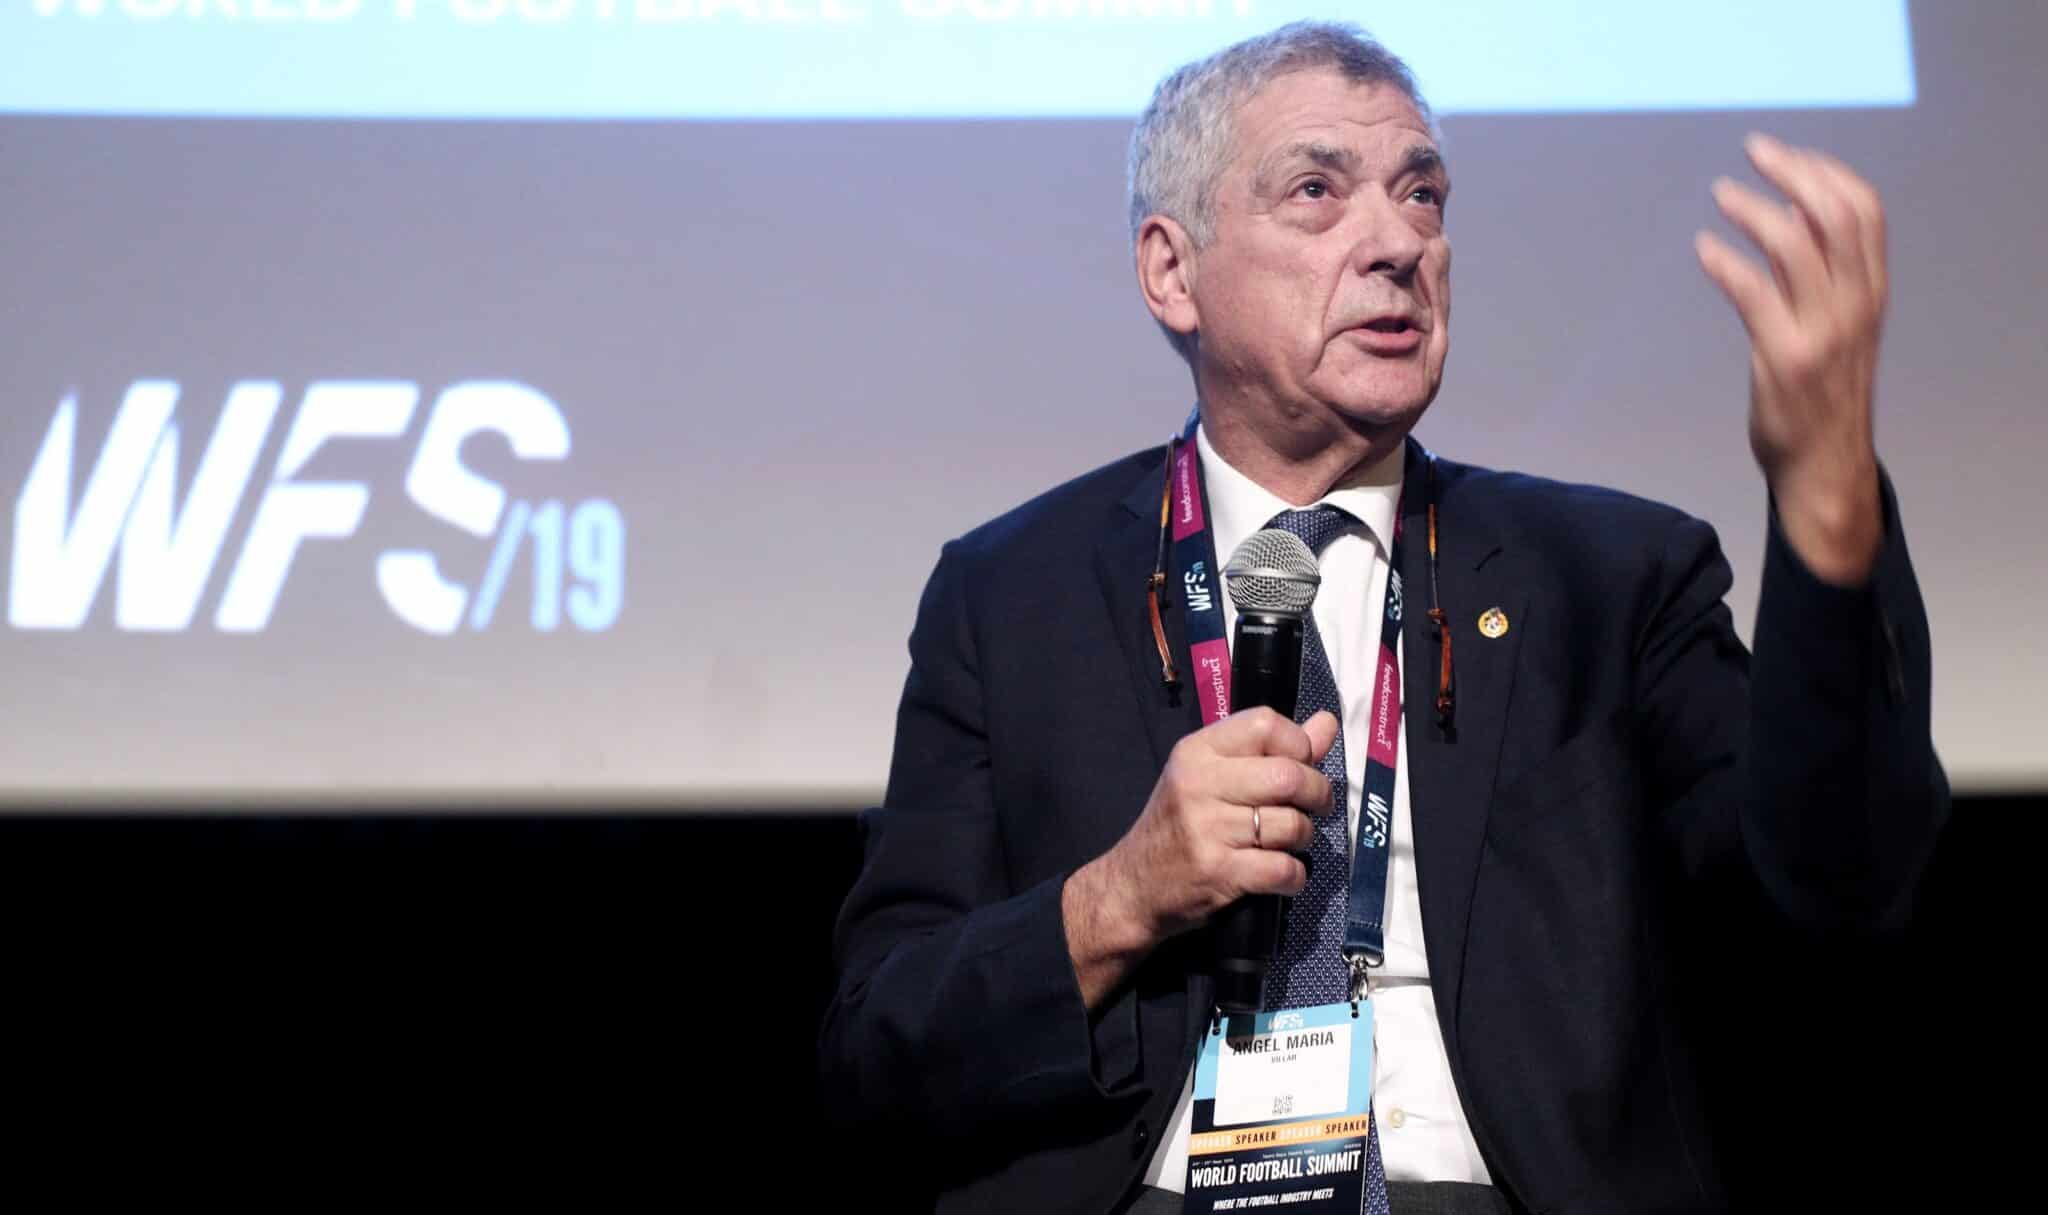 Ángel María Villar, durante su intervención en la cuarta edición de World Football Summit, en 2019.